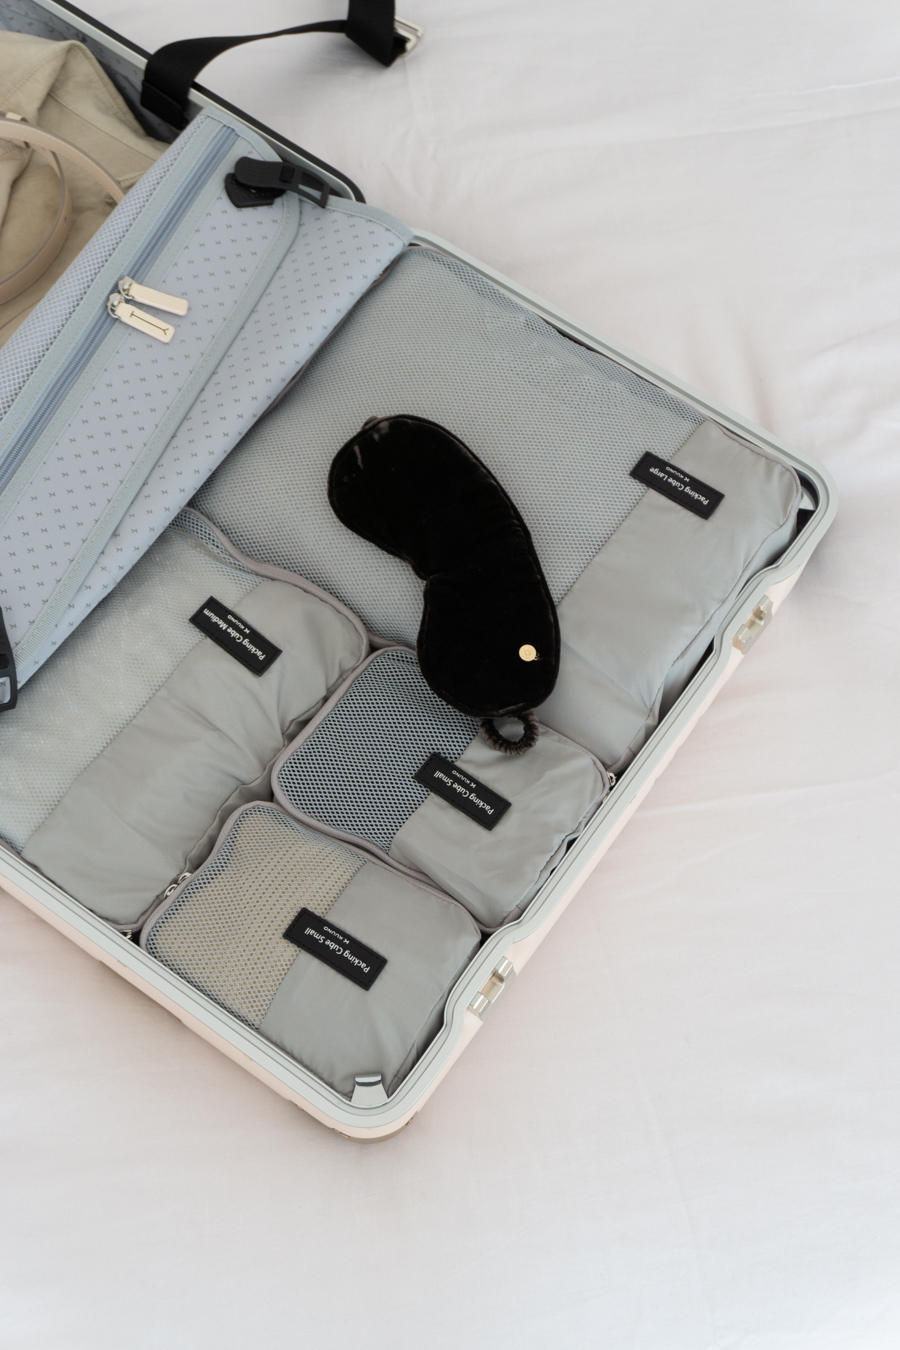 Kuuno Carry-On Suitcase, Designer Luggage, Minimalist Travel Aesthetic, Neutral Style